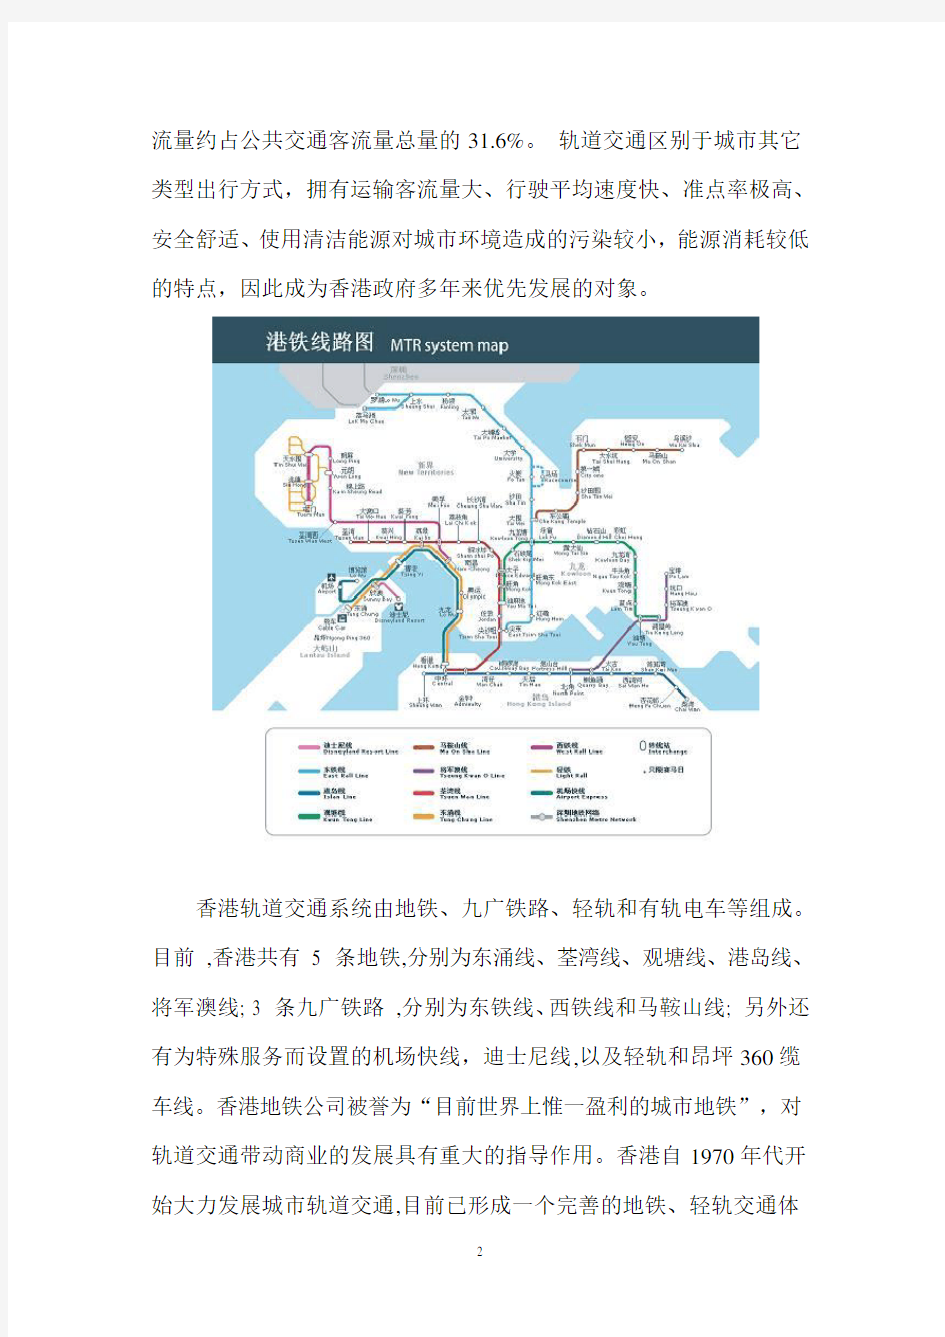 香港轨道交通发展模式对其经济的影响分析